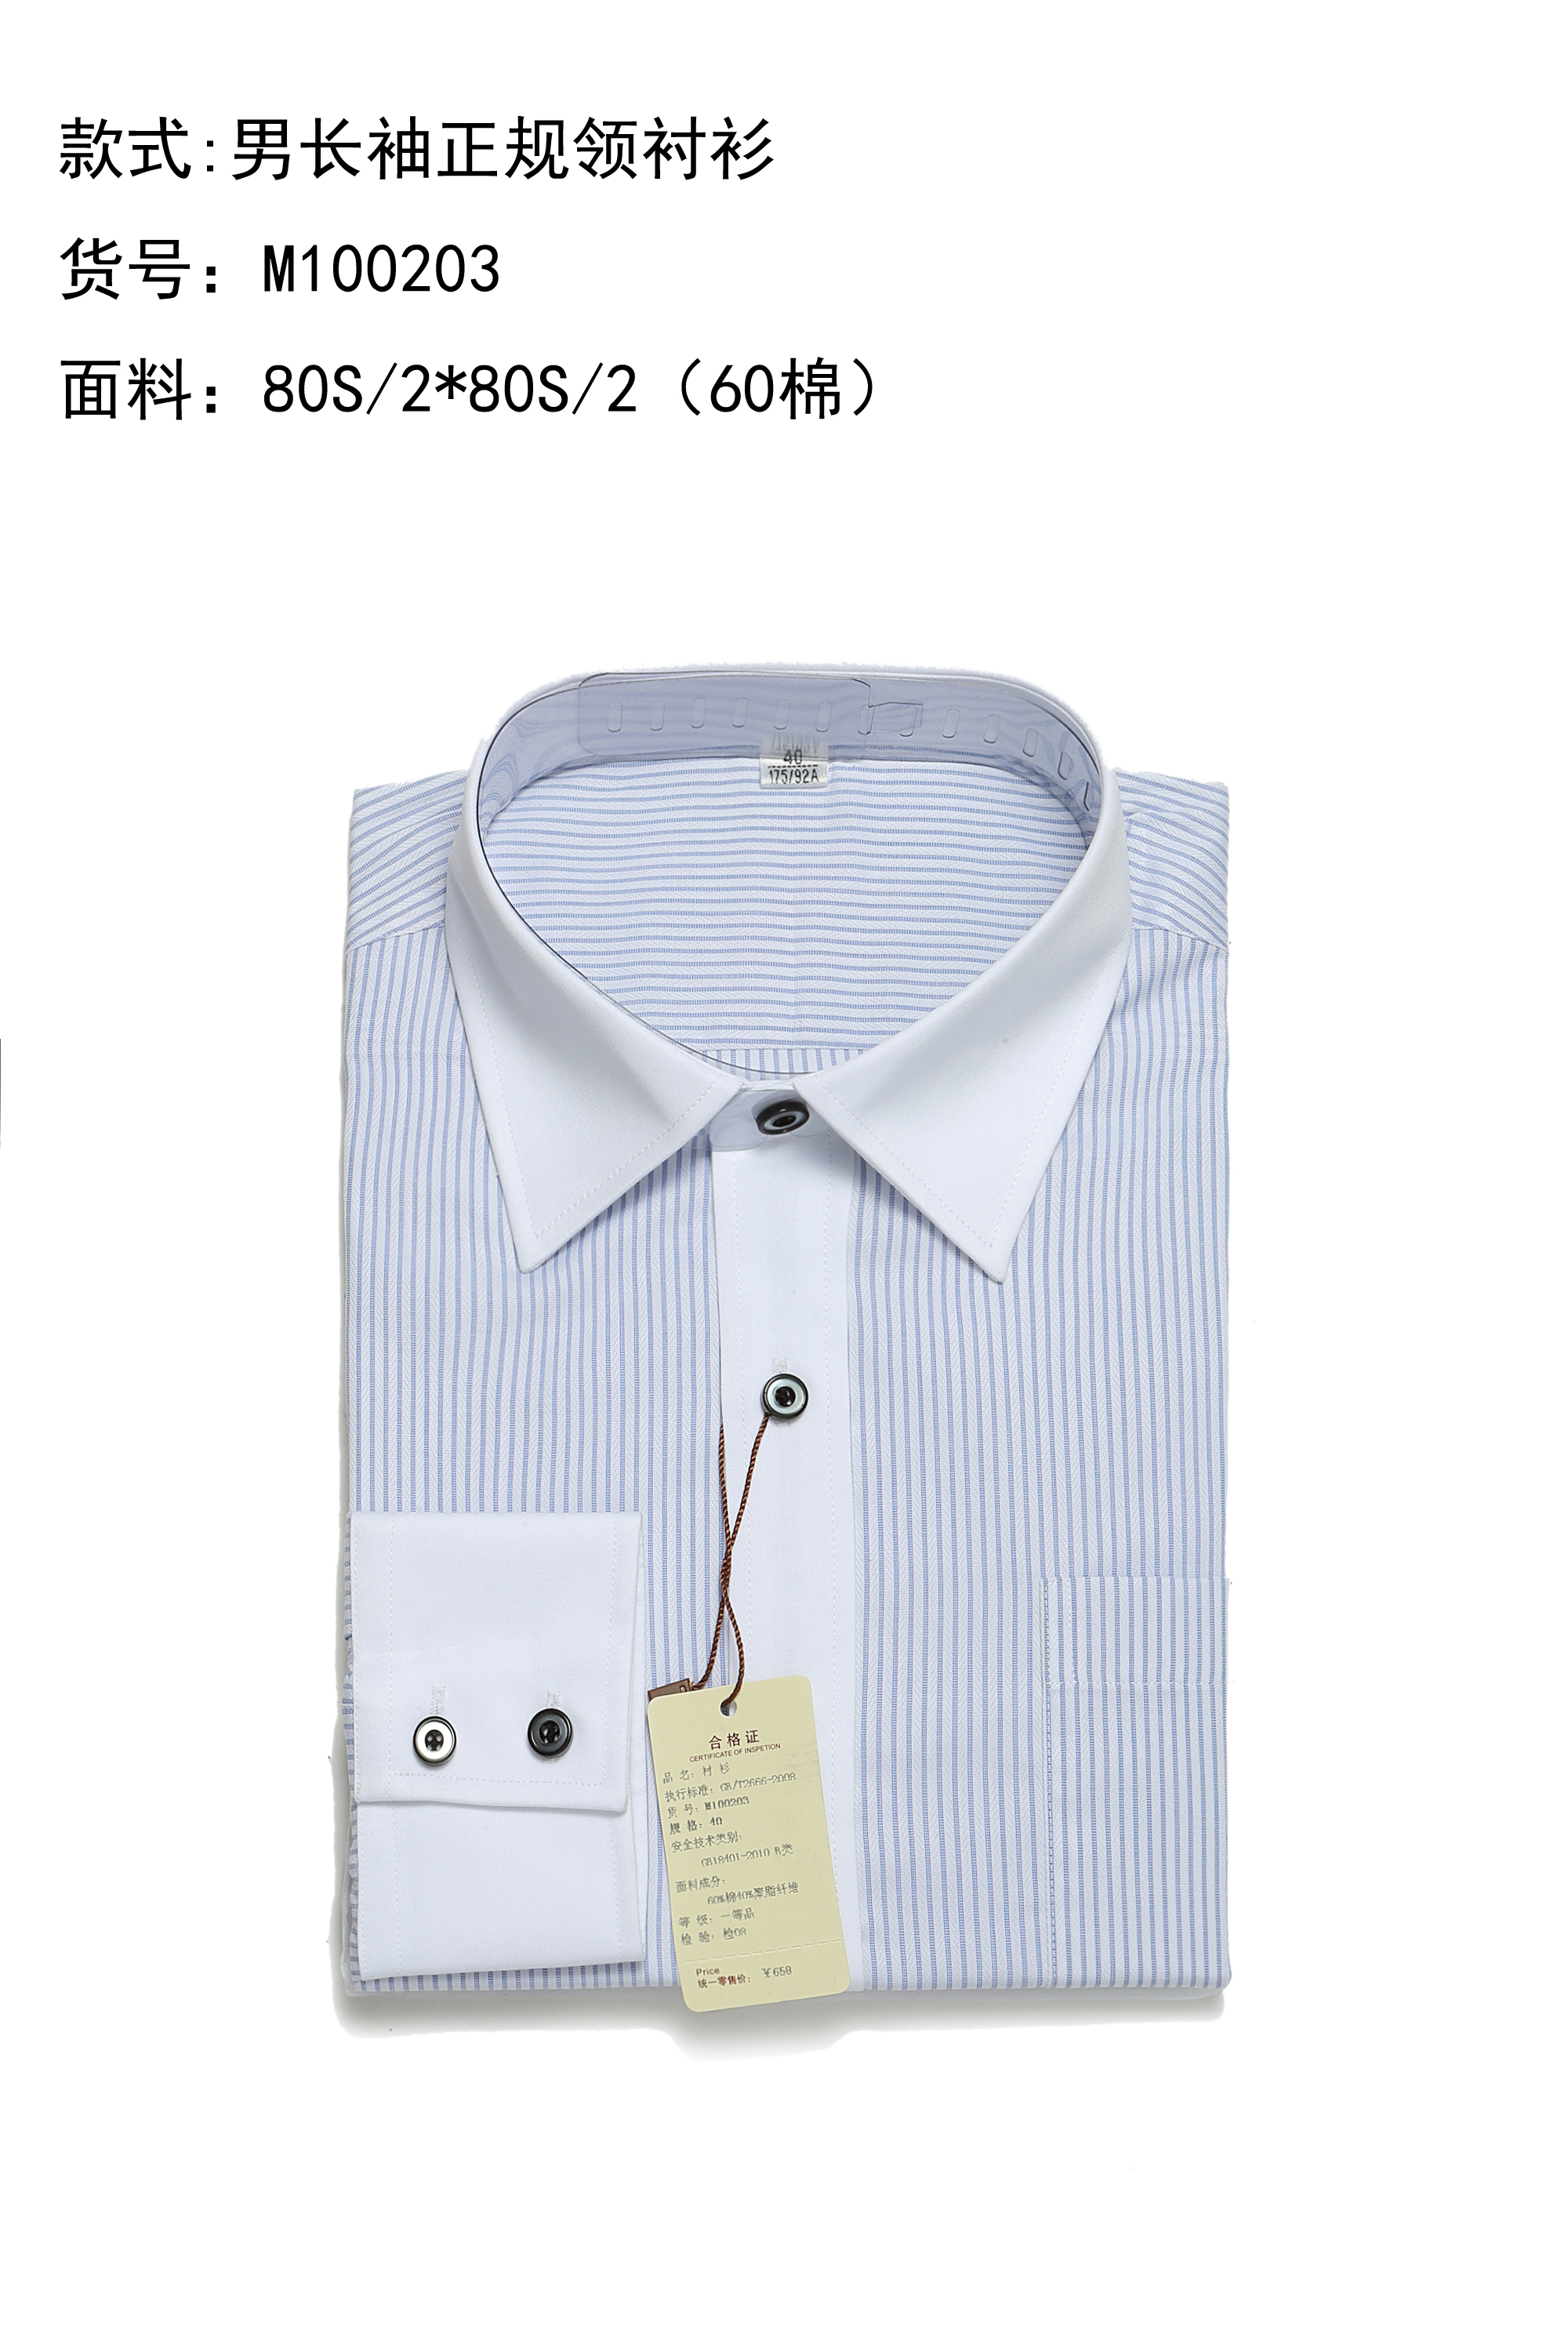 供应用于商务的条纹现货商务衬衫批发厂家北京天奇专业生产高品质商务衬衫图片